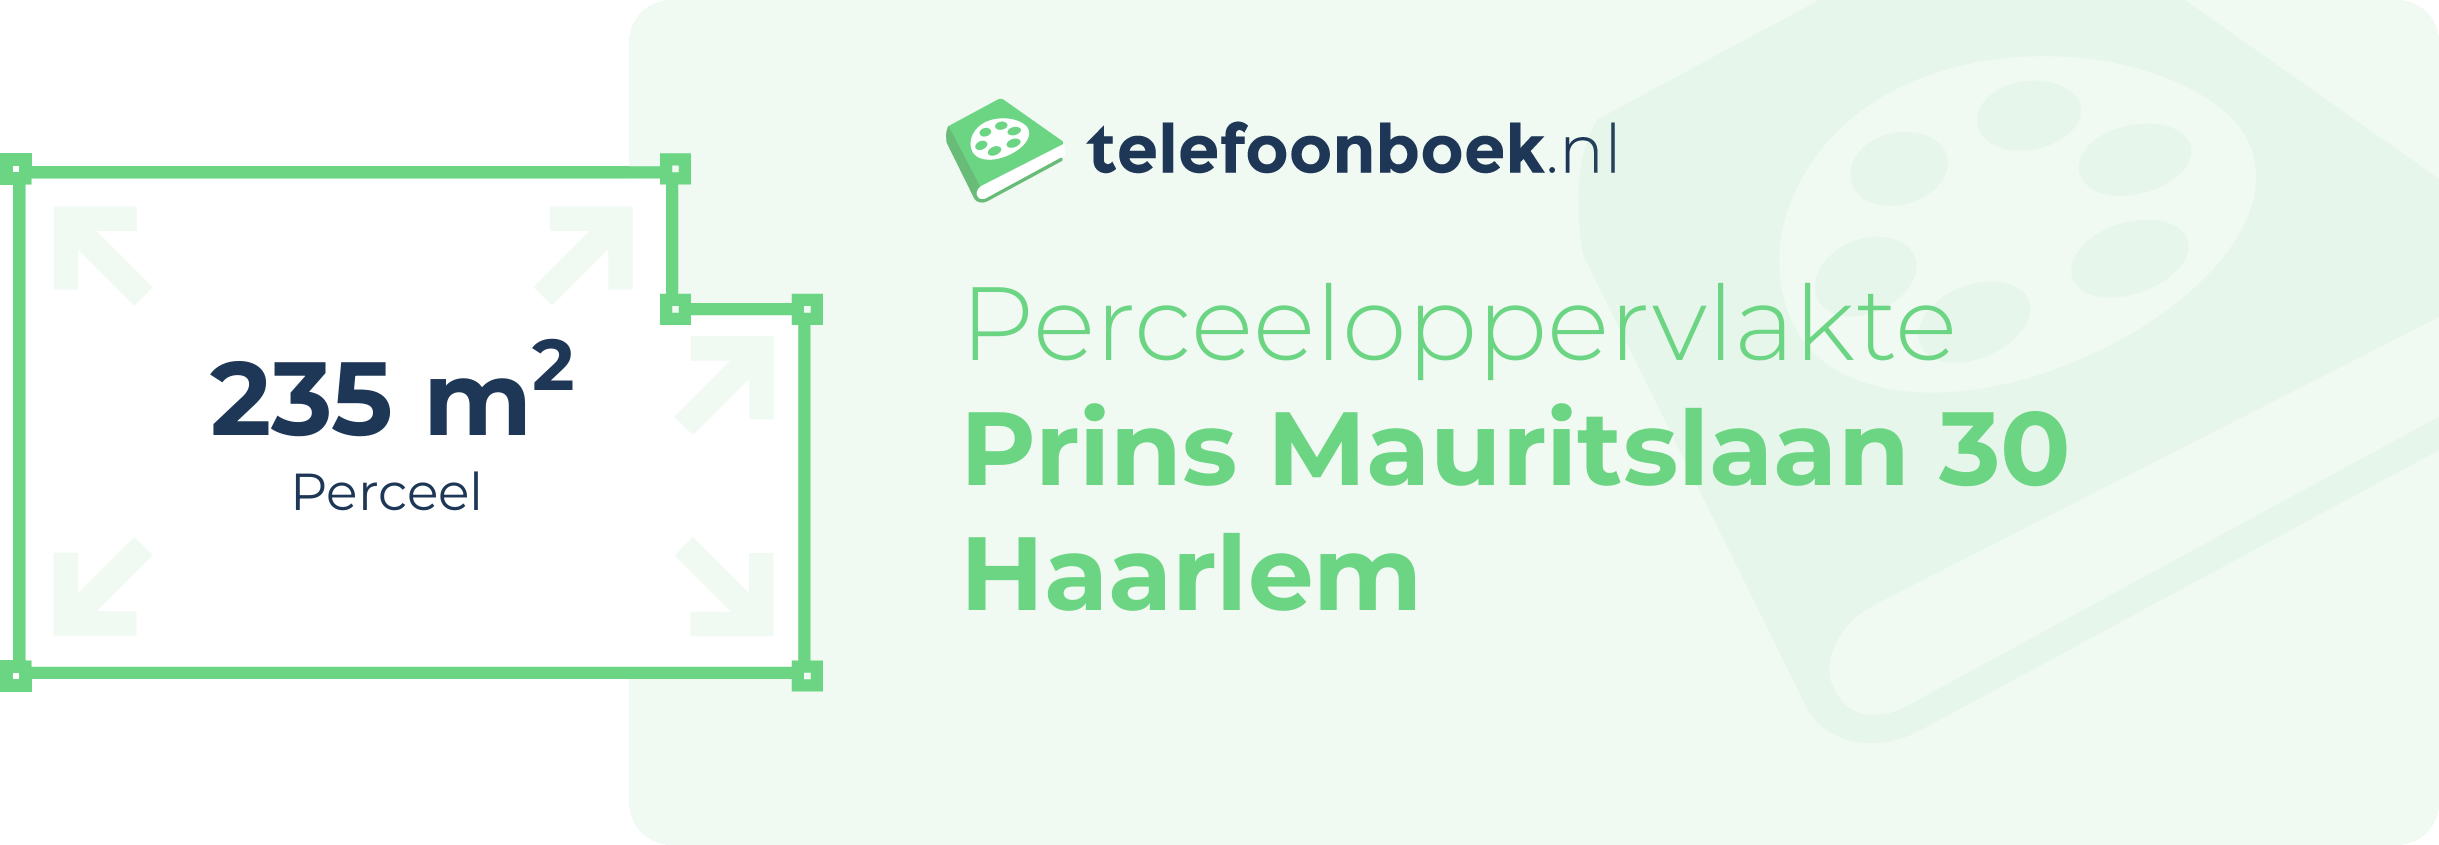 Perceeloppervlakte Prins Mauritslaan 30 Haarlem